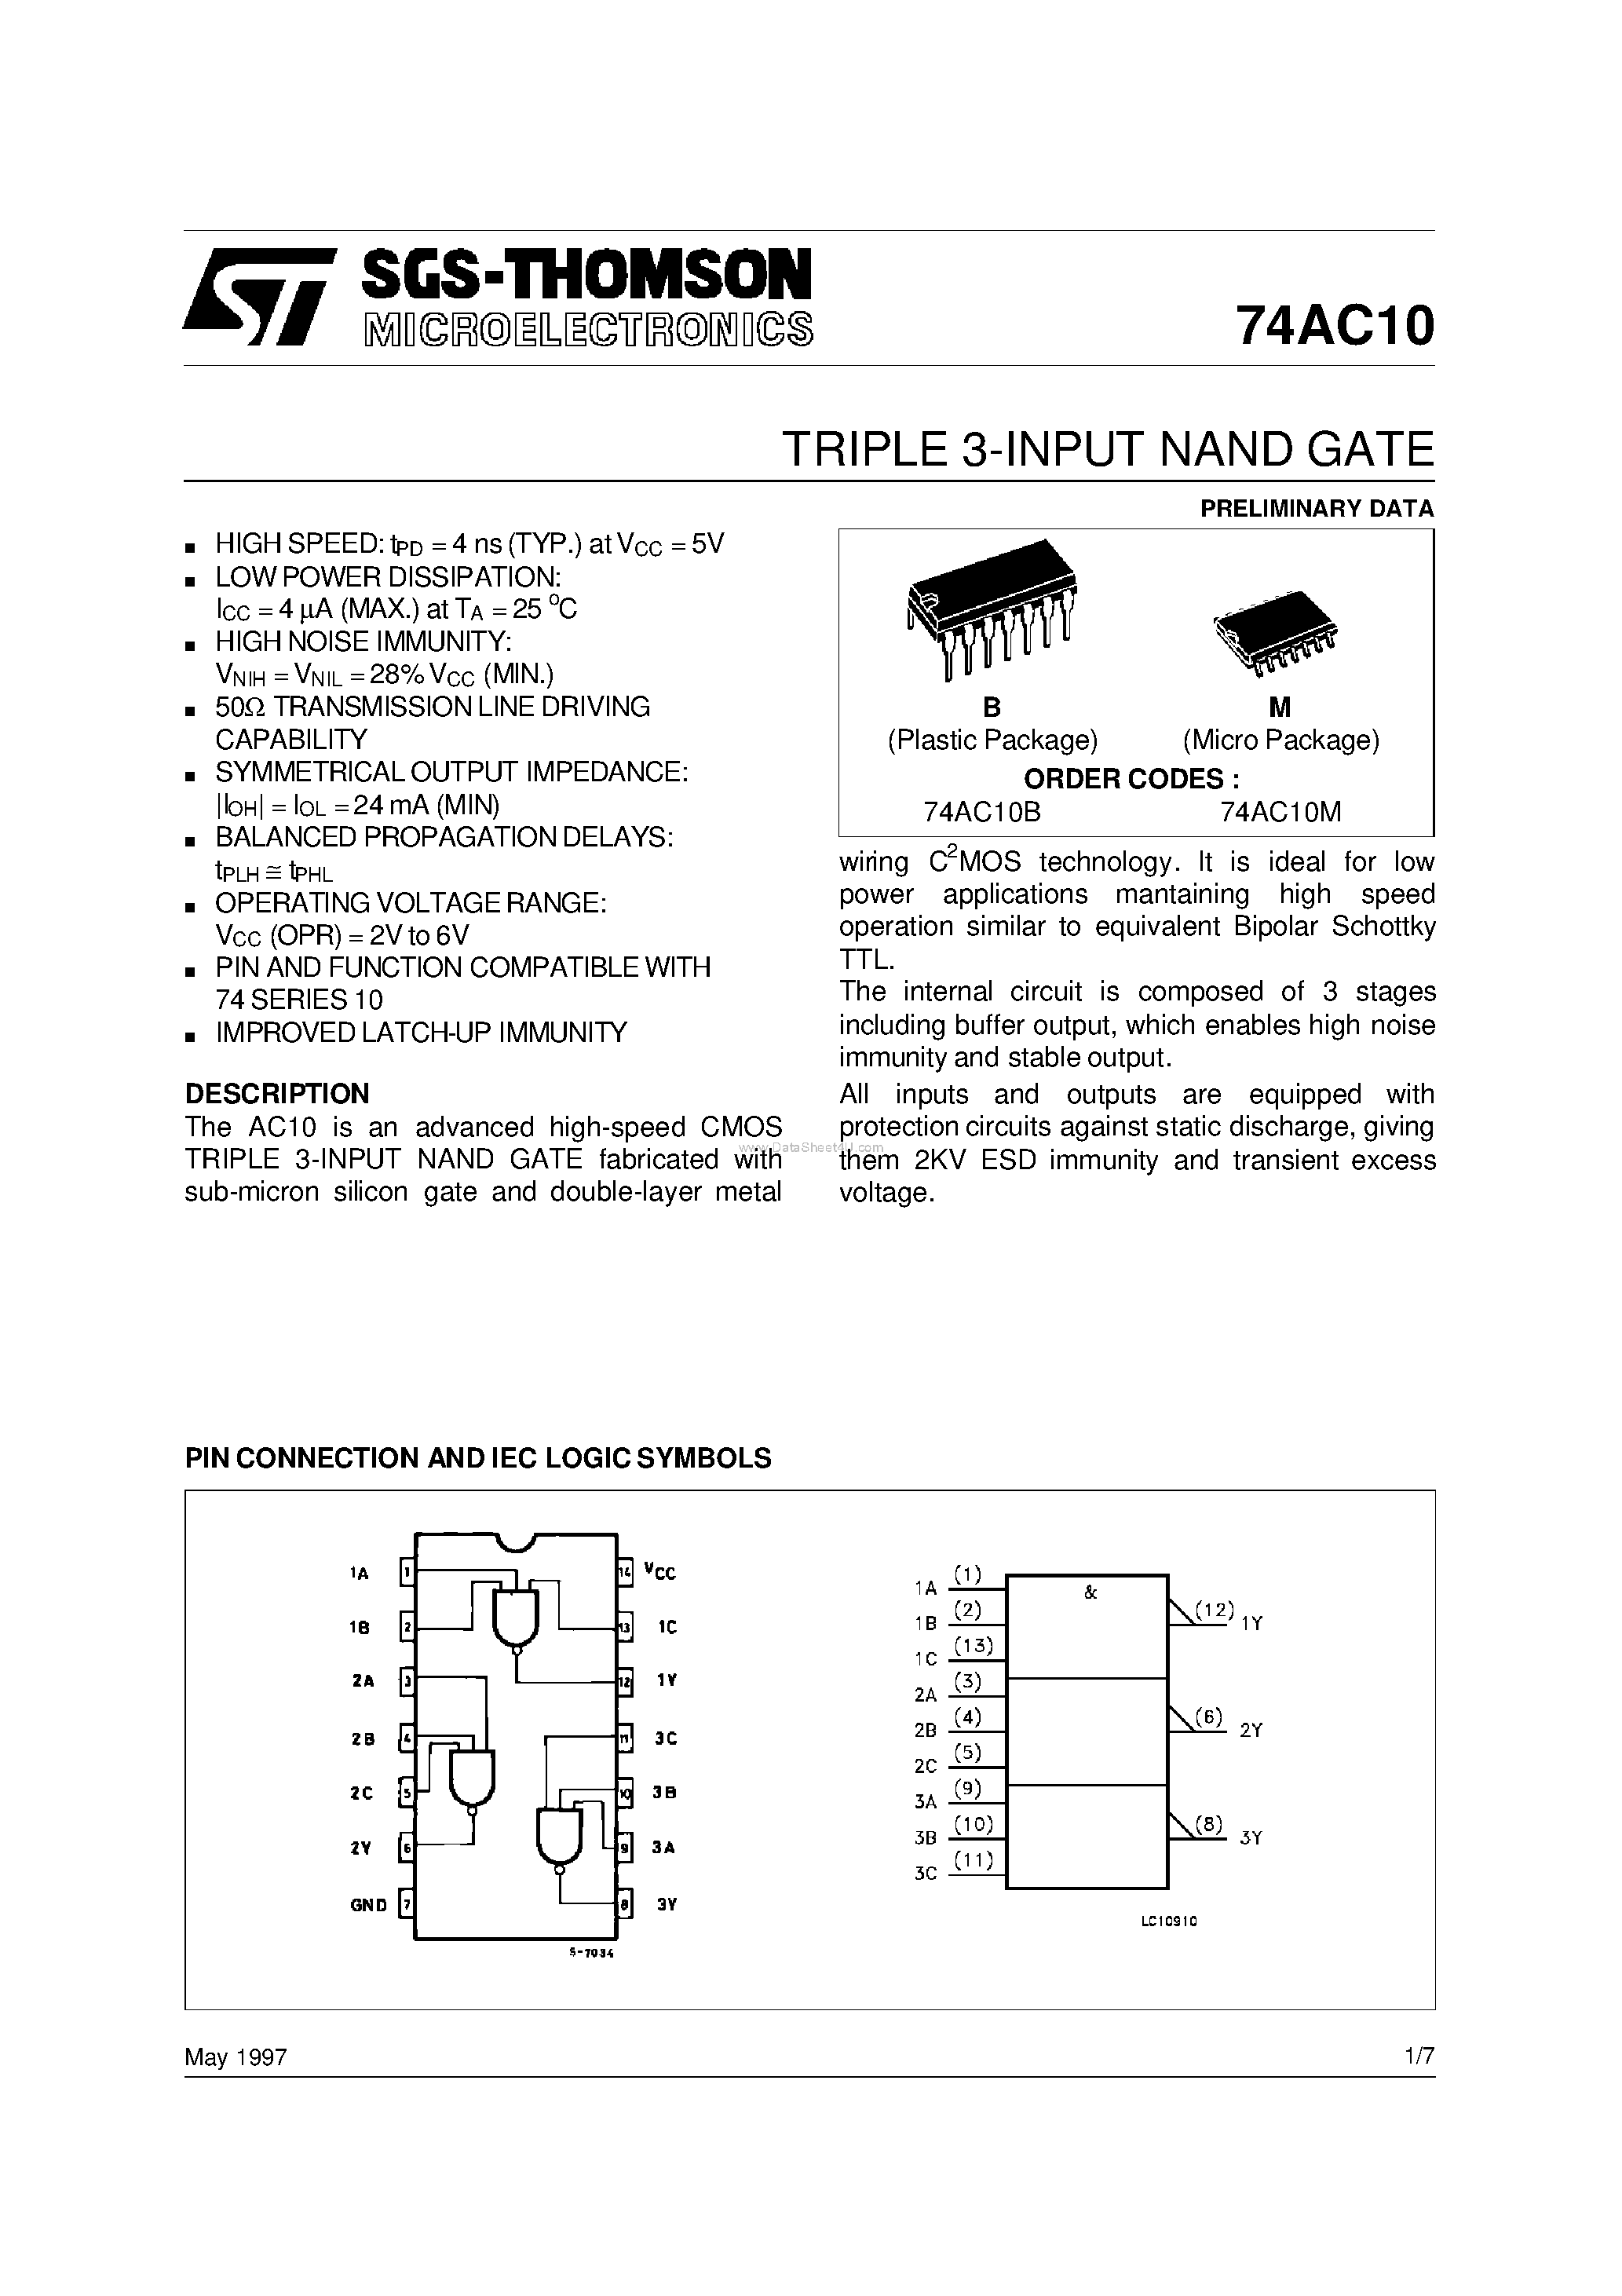 Datasheet 74AC10 - TRIPLE 3-INPUT NAND GATE page 1